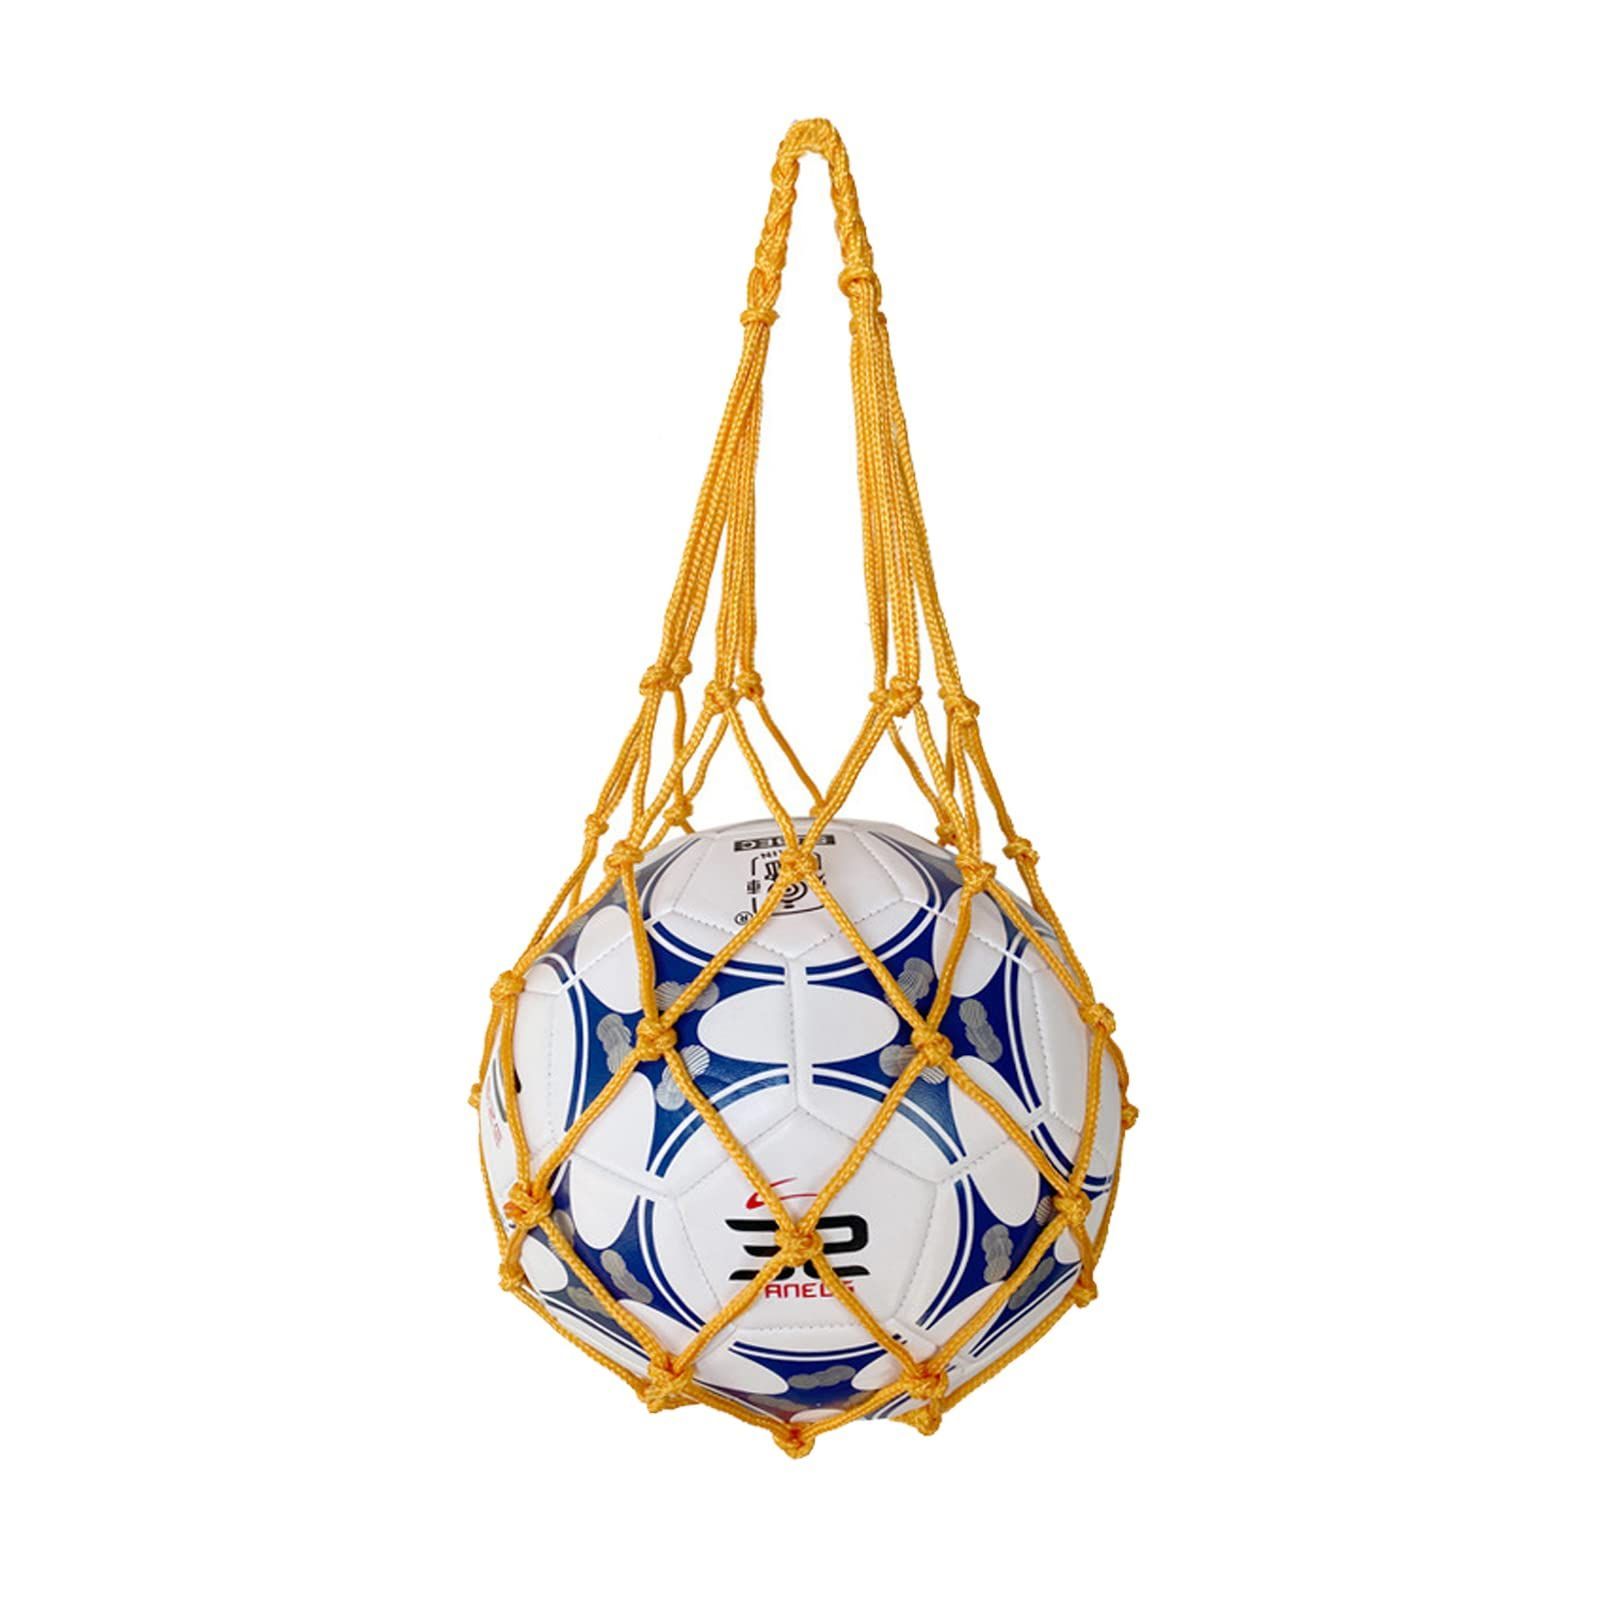 堅実な究極の 収納 サッカー バレーボール バスケットボール用 簡易ボールバッグ 網袋 持ち運び 保管用